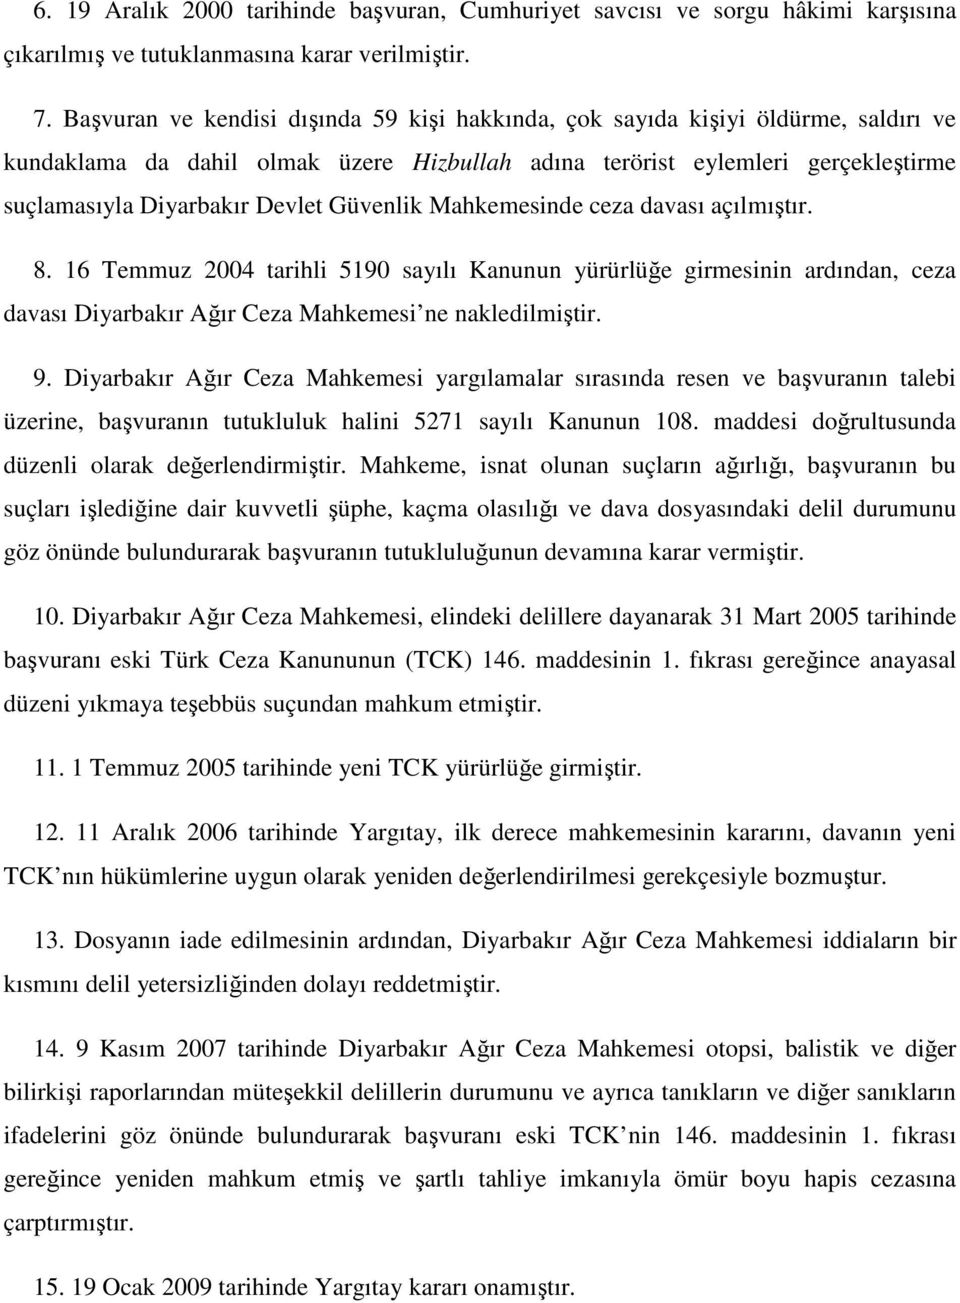 Güvenlik Mahkemesinde ceza davası açılmıştır. 8. 16 Temmuz 2004 tarihli 5190 sayılı Kanunun yürürlüğe girmesinin ardından, ceza davası Diyarbakır Ağır Ceza Mahkemesi ne nakledilmiştir. 9.